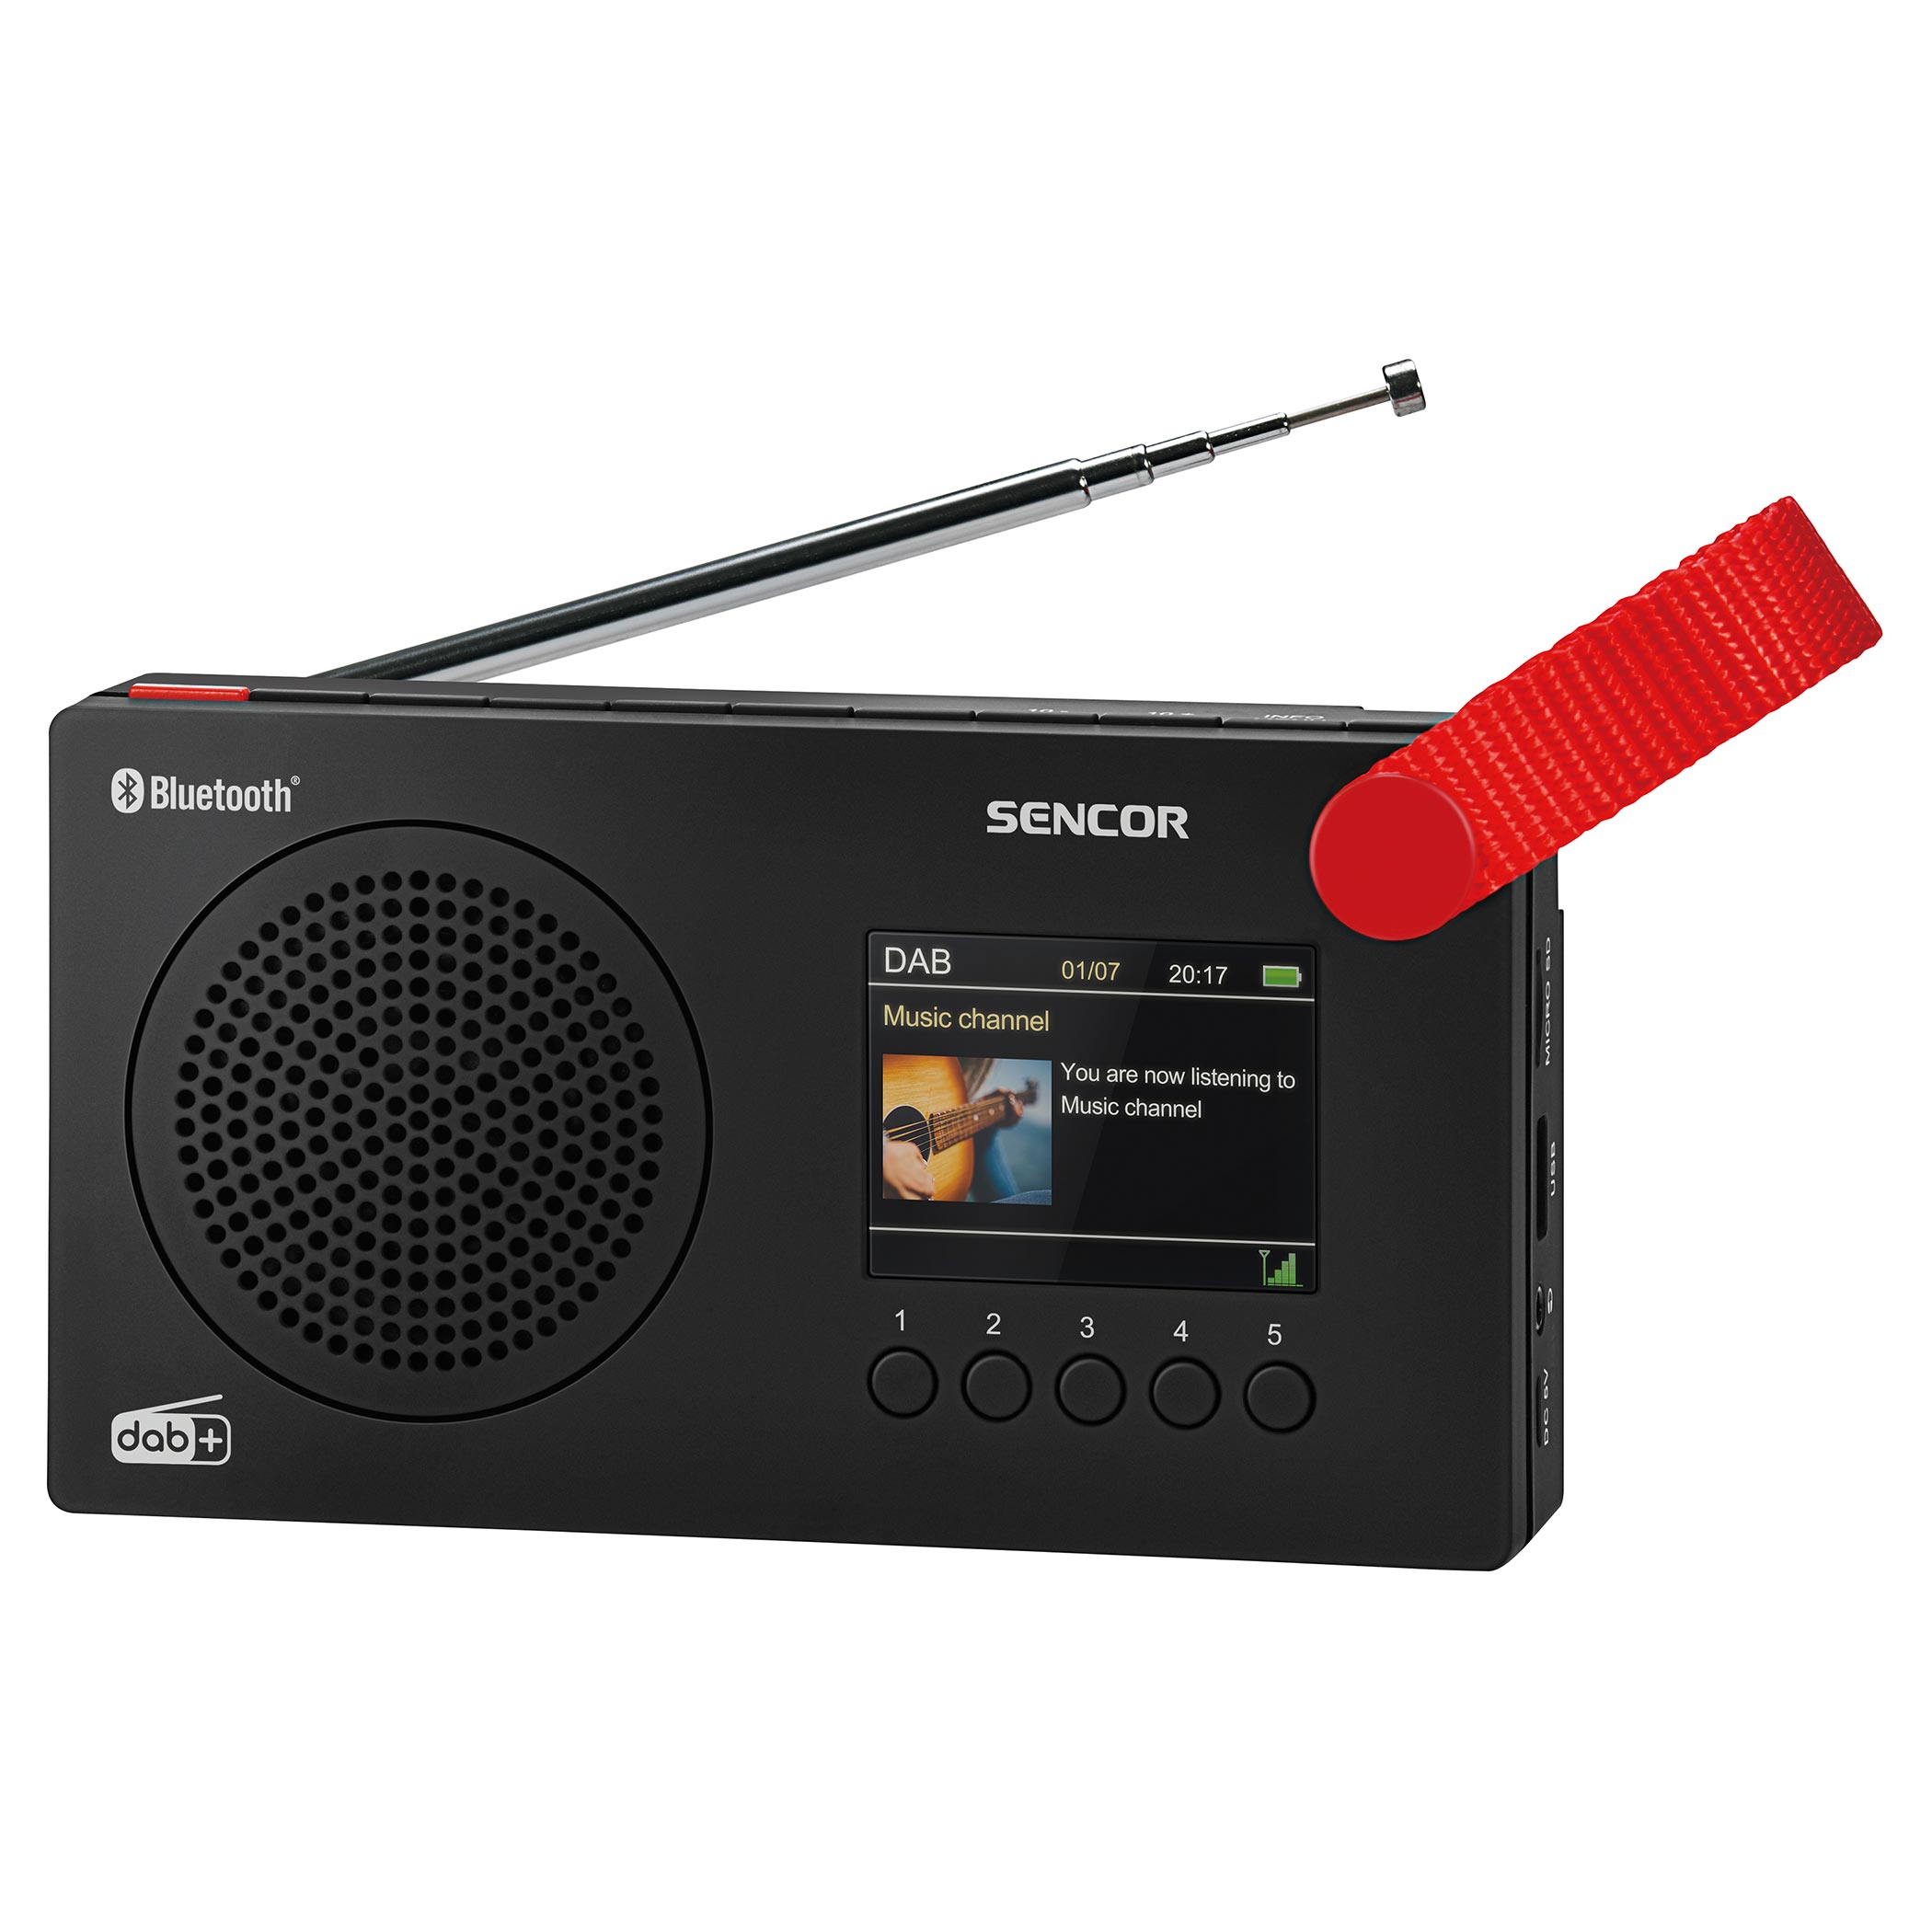  Digital Radio